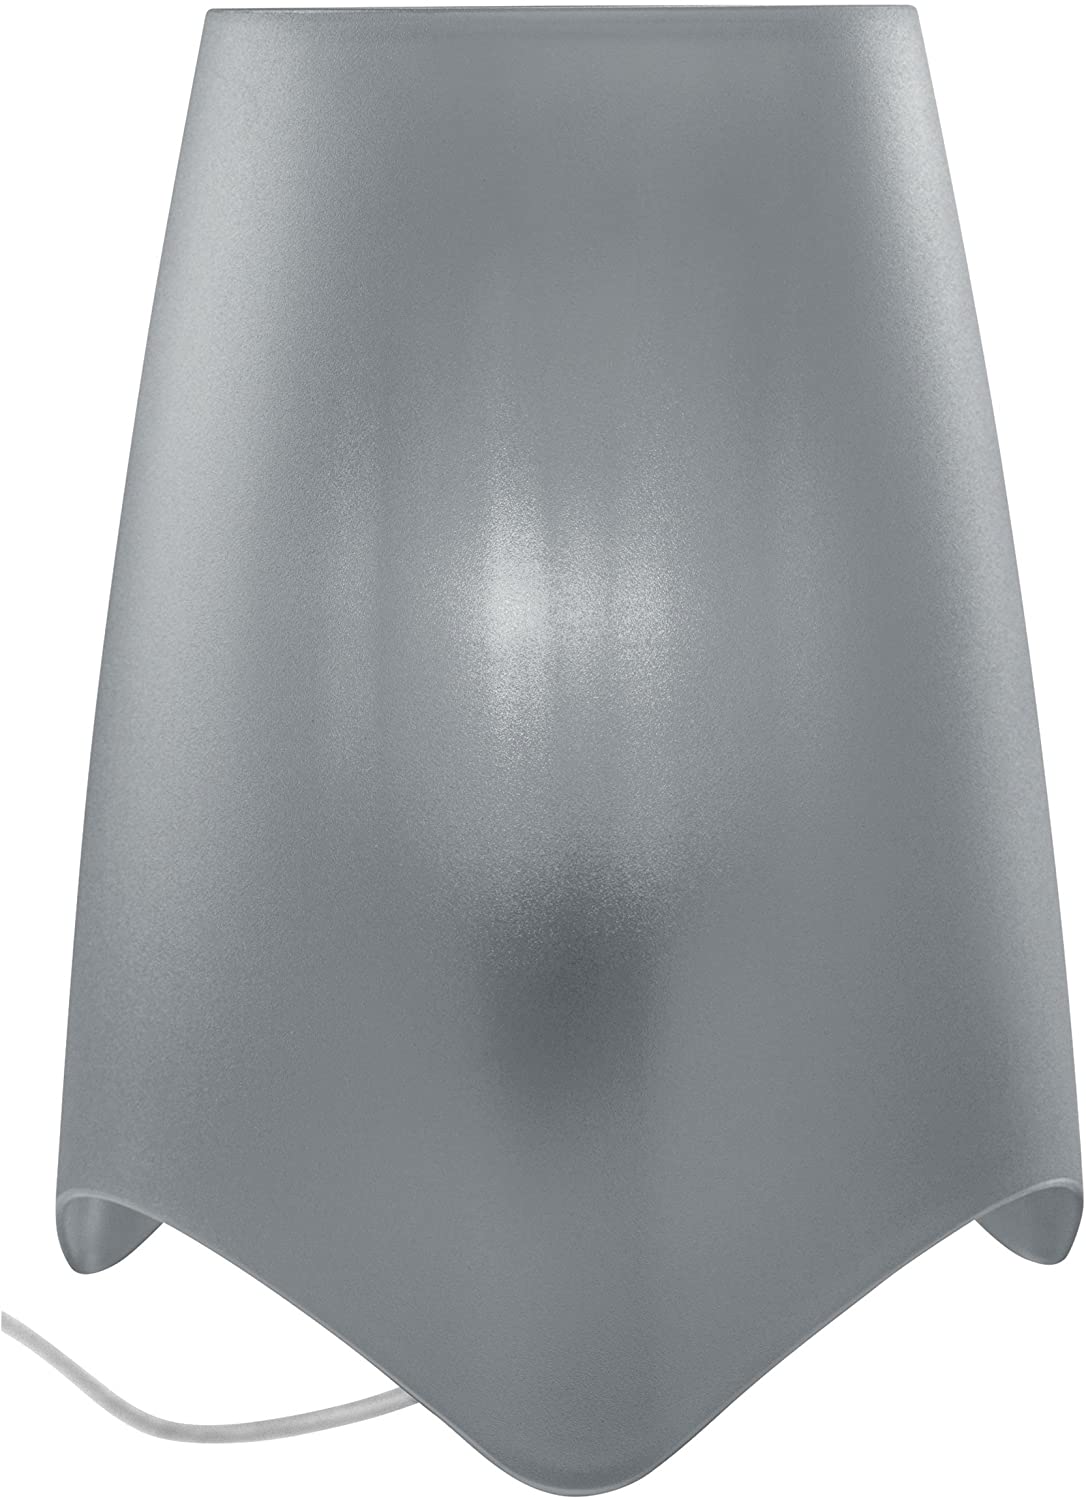 Koziol Mood 1935632 Table Lamp Diameter 19.7 Cm Plastic Cool Grey